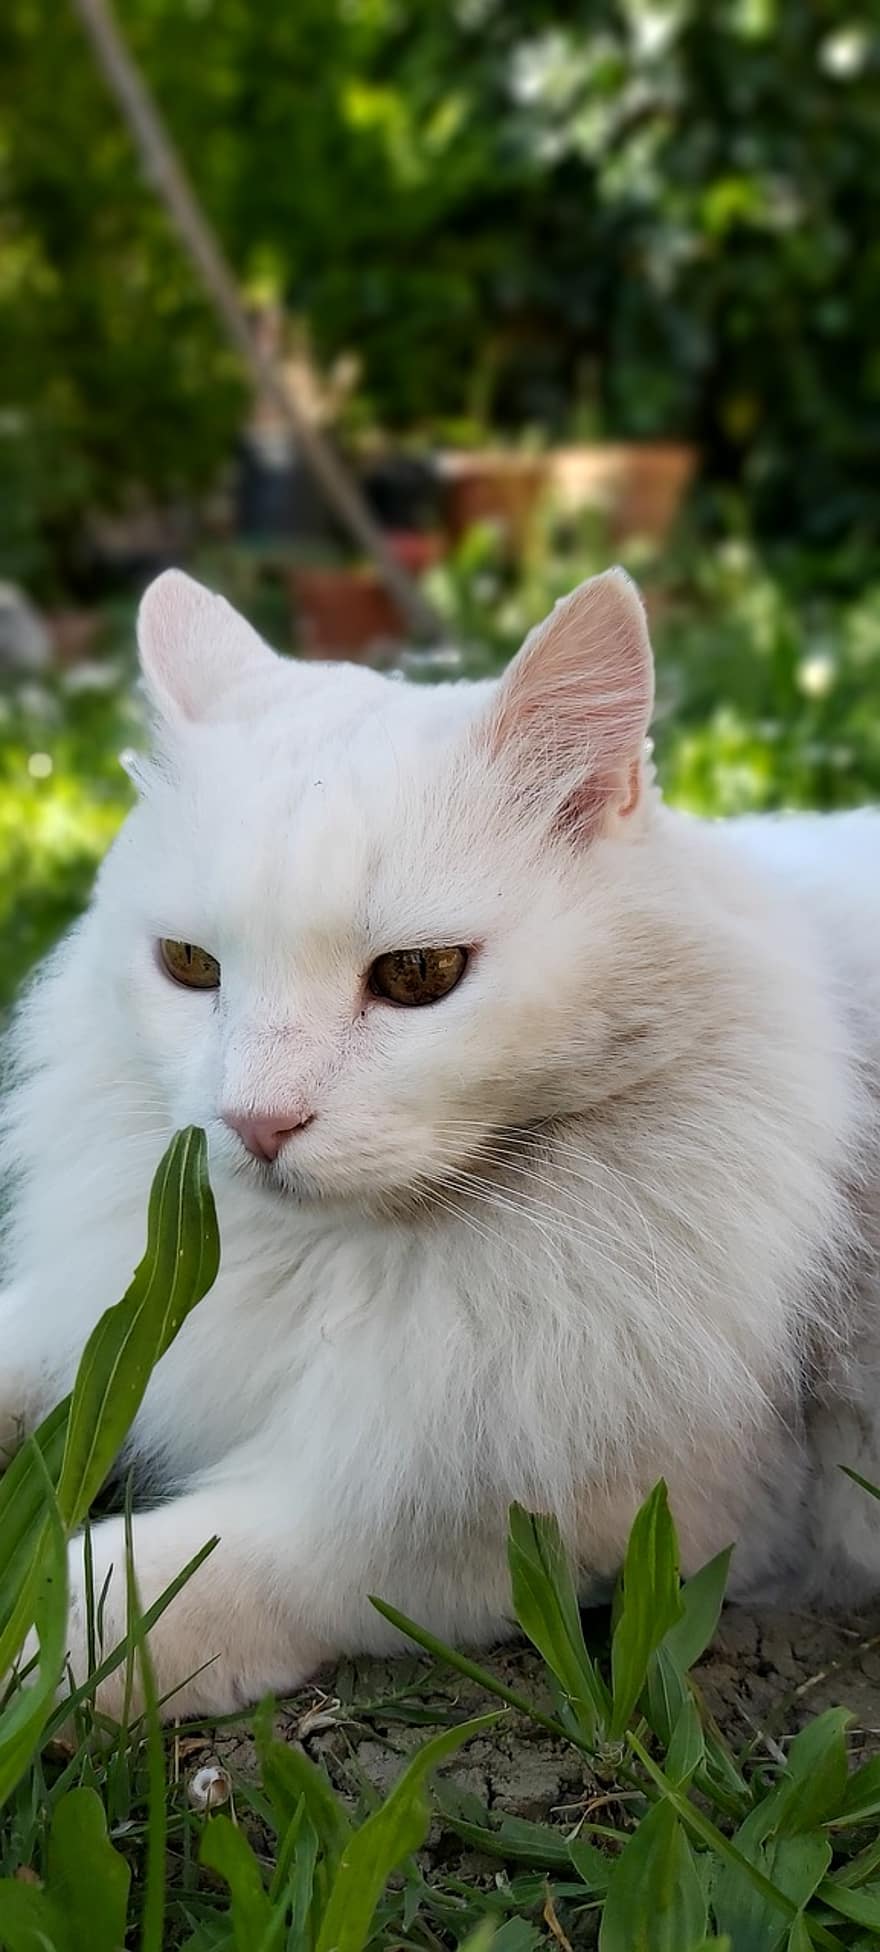 fehér macska, állatok, macska, természet, macskaféle, szemek, néz, kert, tavaszi